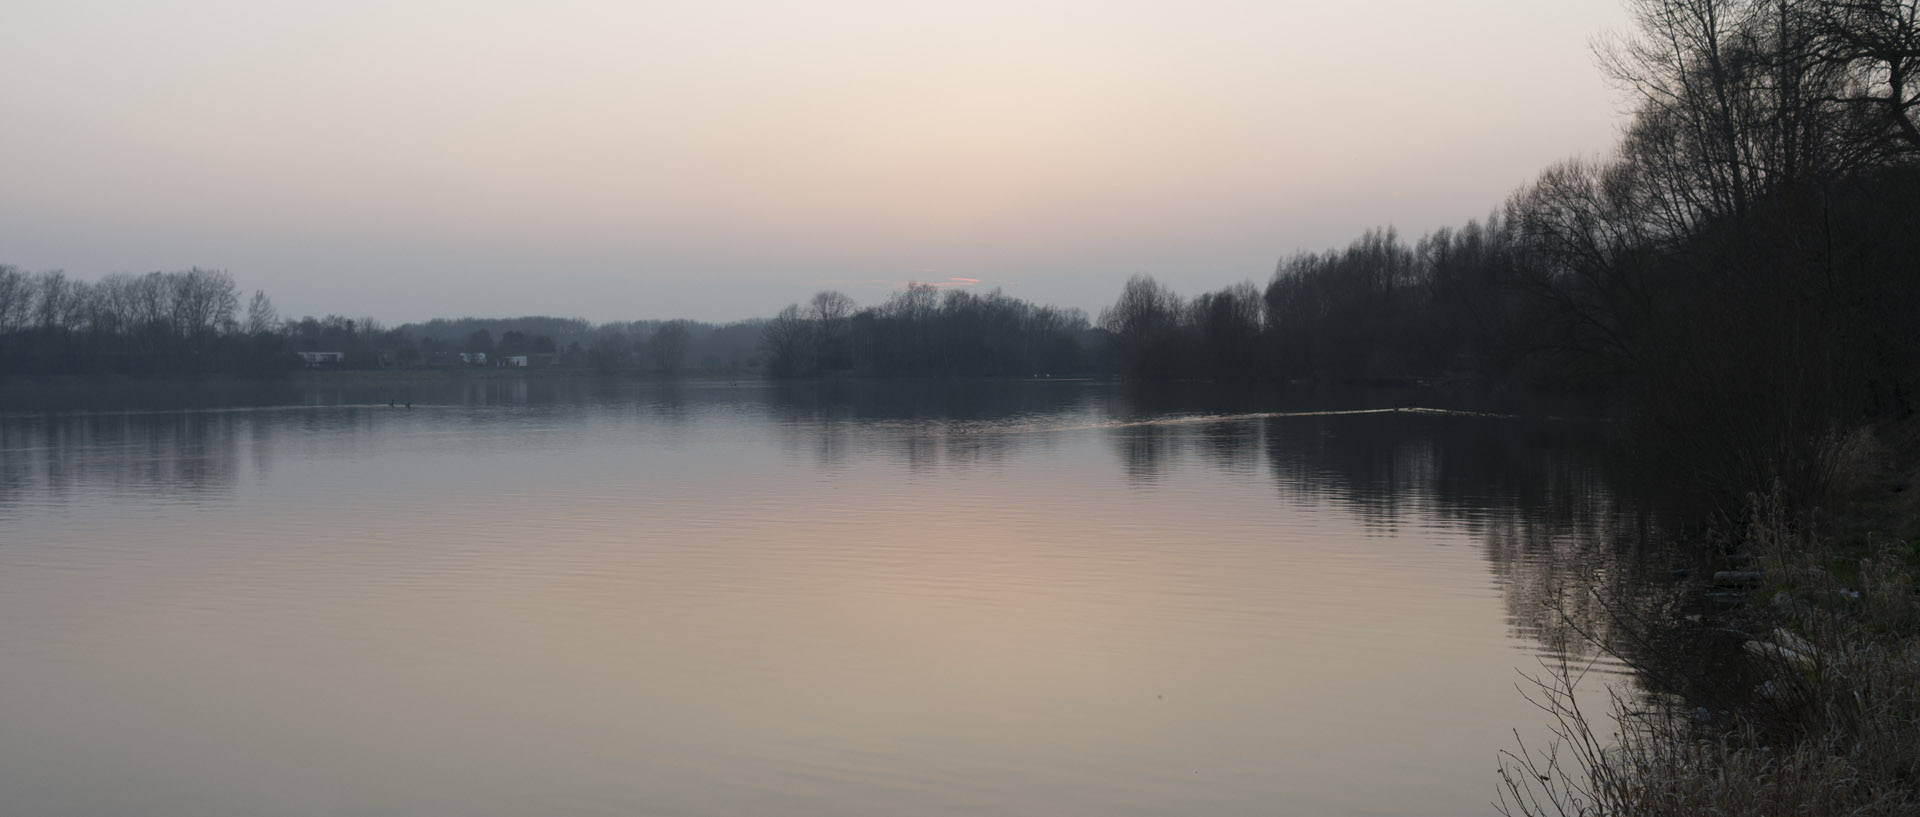 Lundi 16 mars 2015, 18:42, lac du Héron, Villeneuve d'Ascq